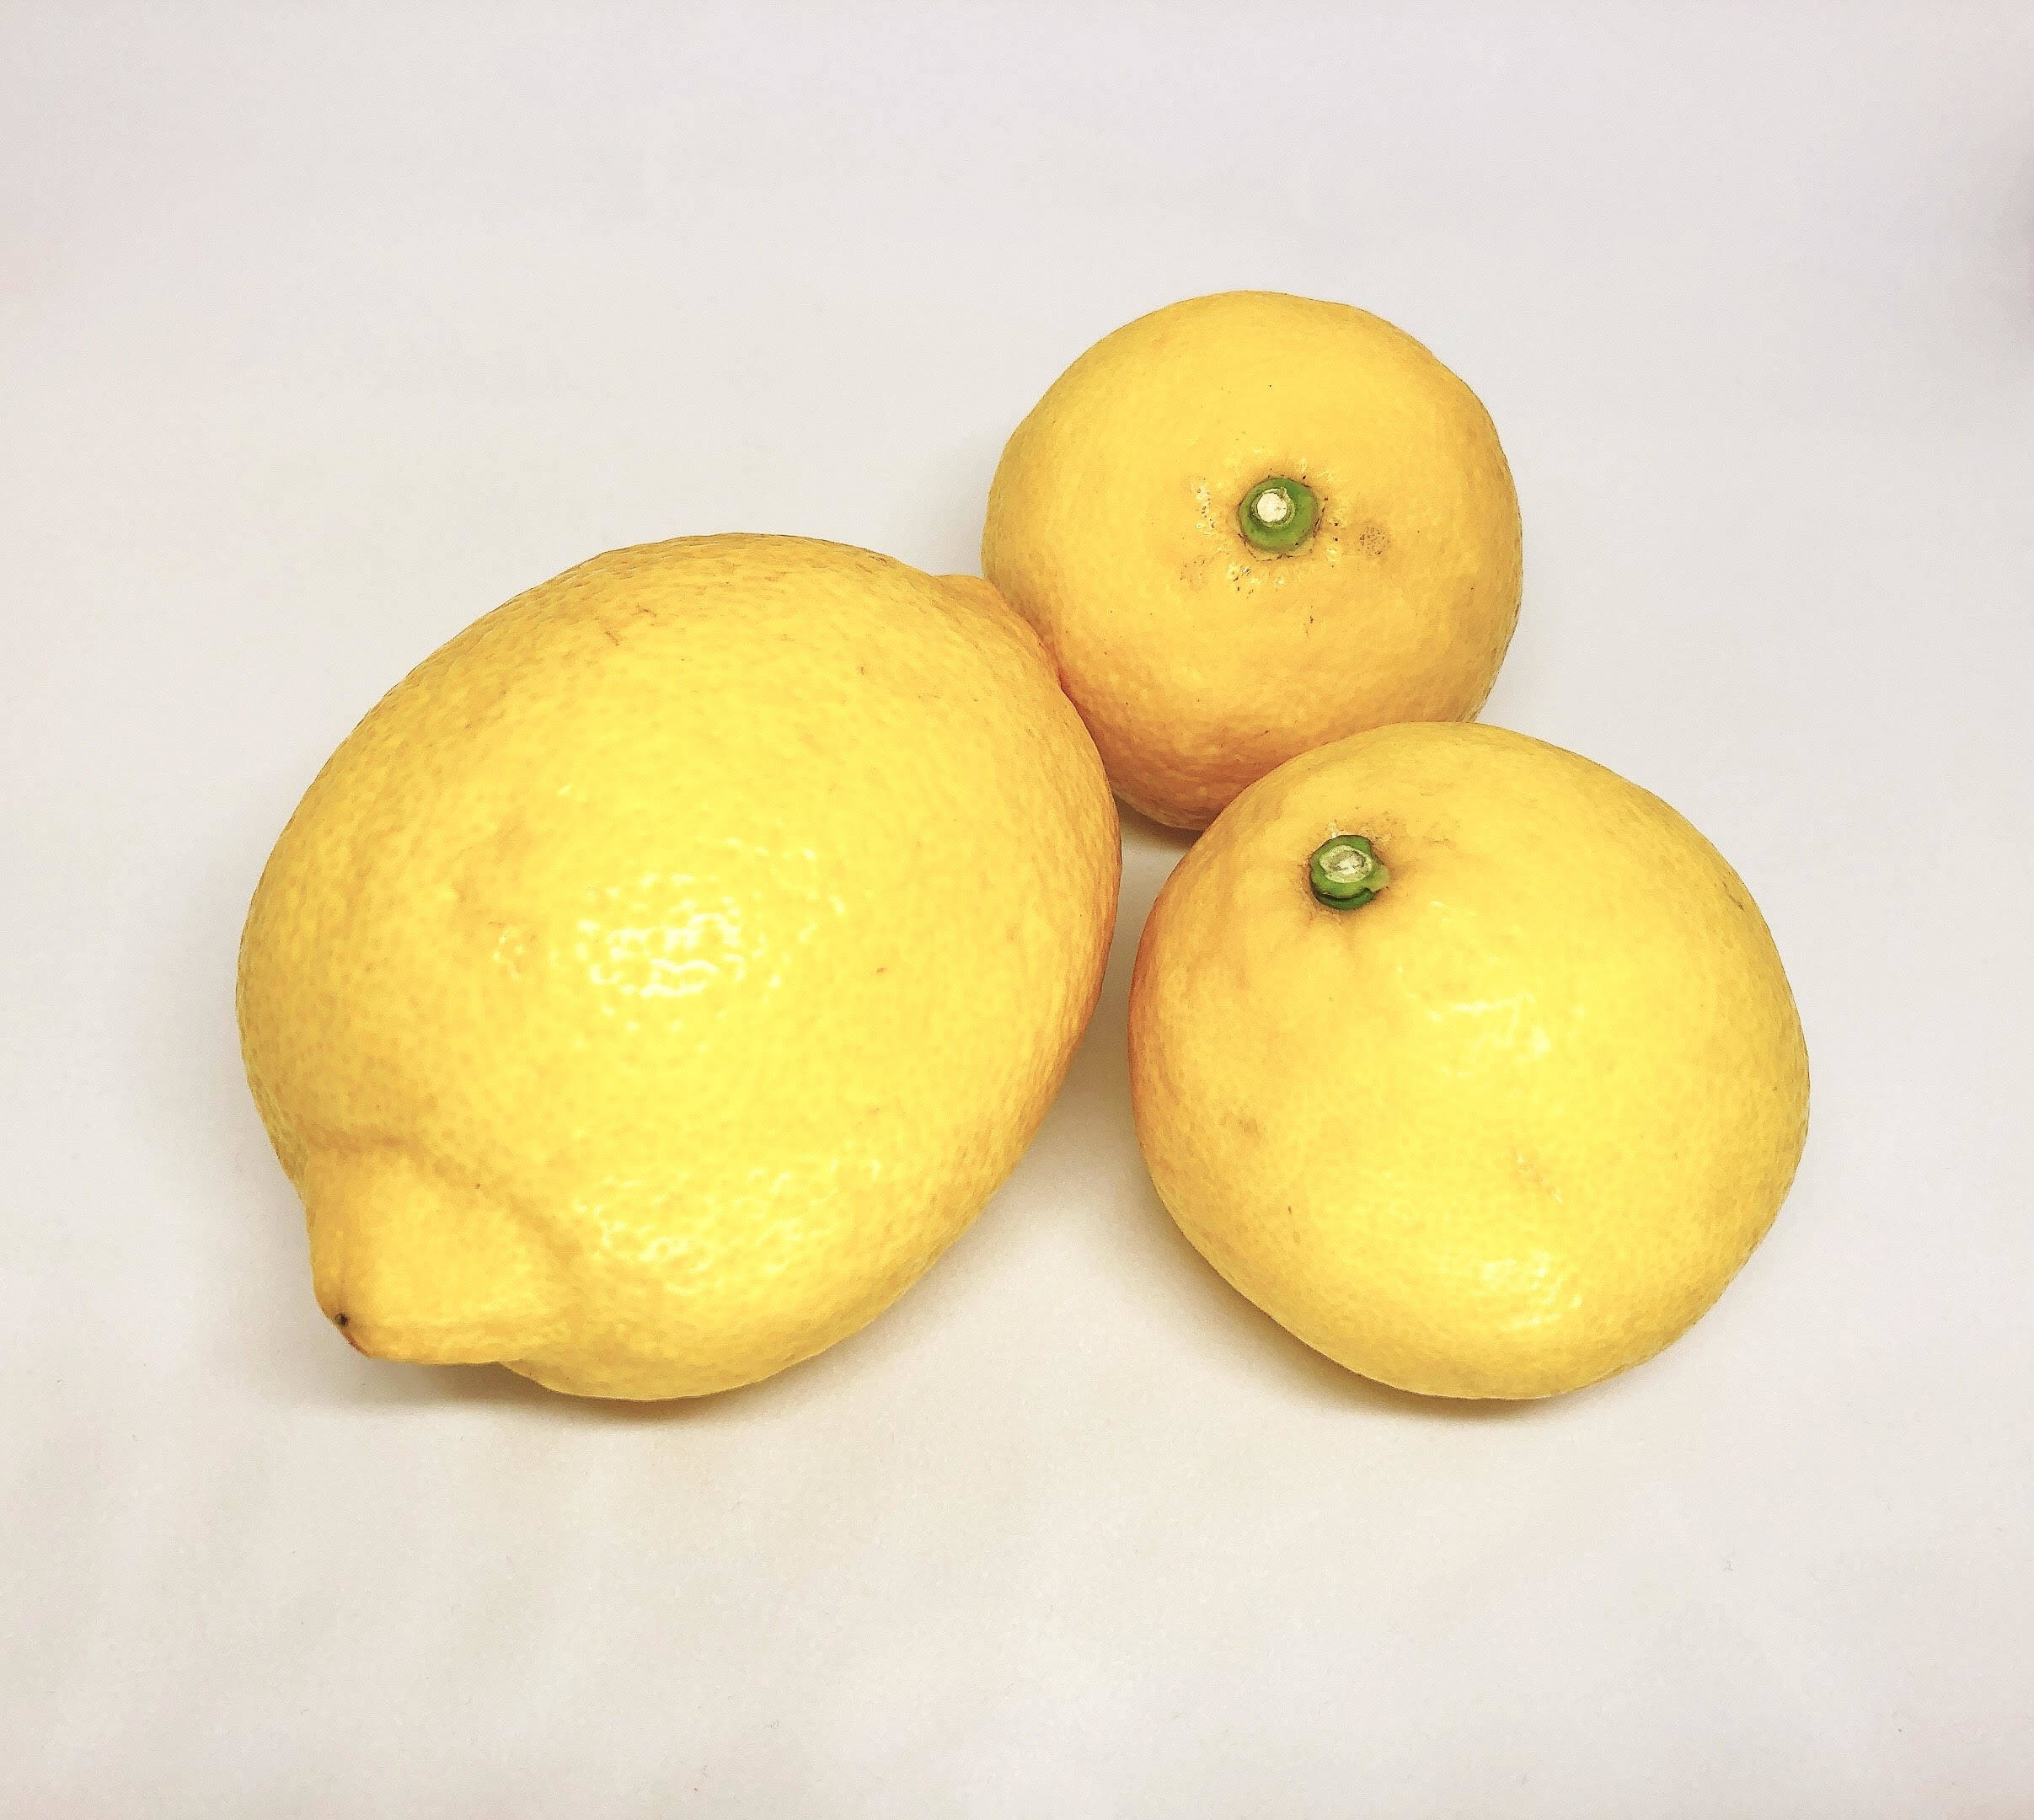 国産グリーンレモン 2.5kg 通販